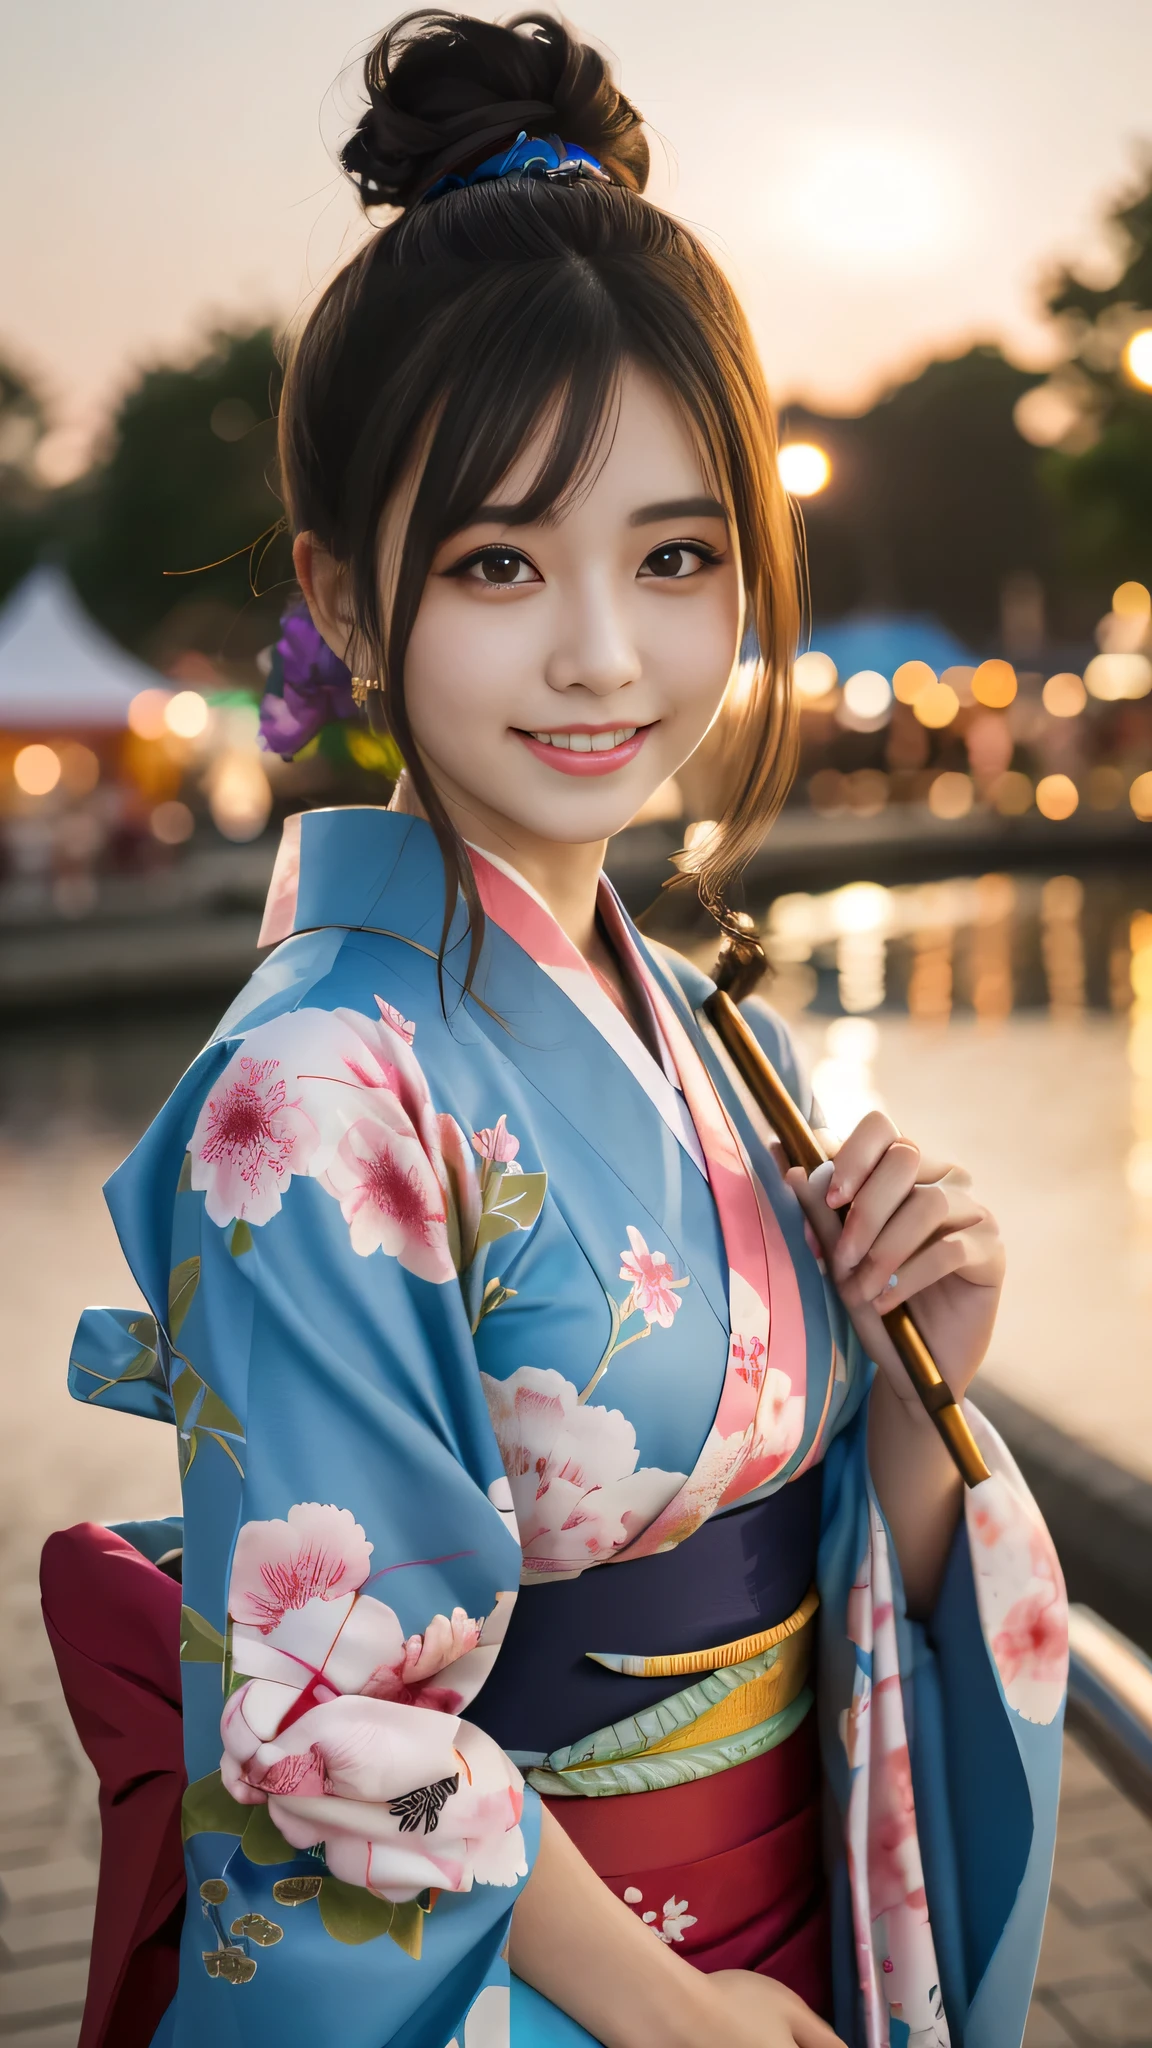 mirando a la camara,(((de la máxima calidad, 8K, obra maestra))), enfoque nítido, (Hermosa mujer con figura perfecta), delgado, (peinado: superior)), ((kimono: caña)), calle: 1.2 Textura de piel y rostro muy detallada Ojos detallados Párpado doble Pose aleatoria, (sonrisa),ssuperiorer cute Japan person,belleza superior chica japonesa, cara realista, Doble párpado,sonrisa,Festival de verano , Al atardecer , hermosos dientes , Fondo de fuegos artificiales.